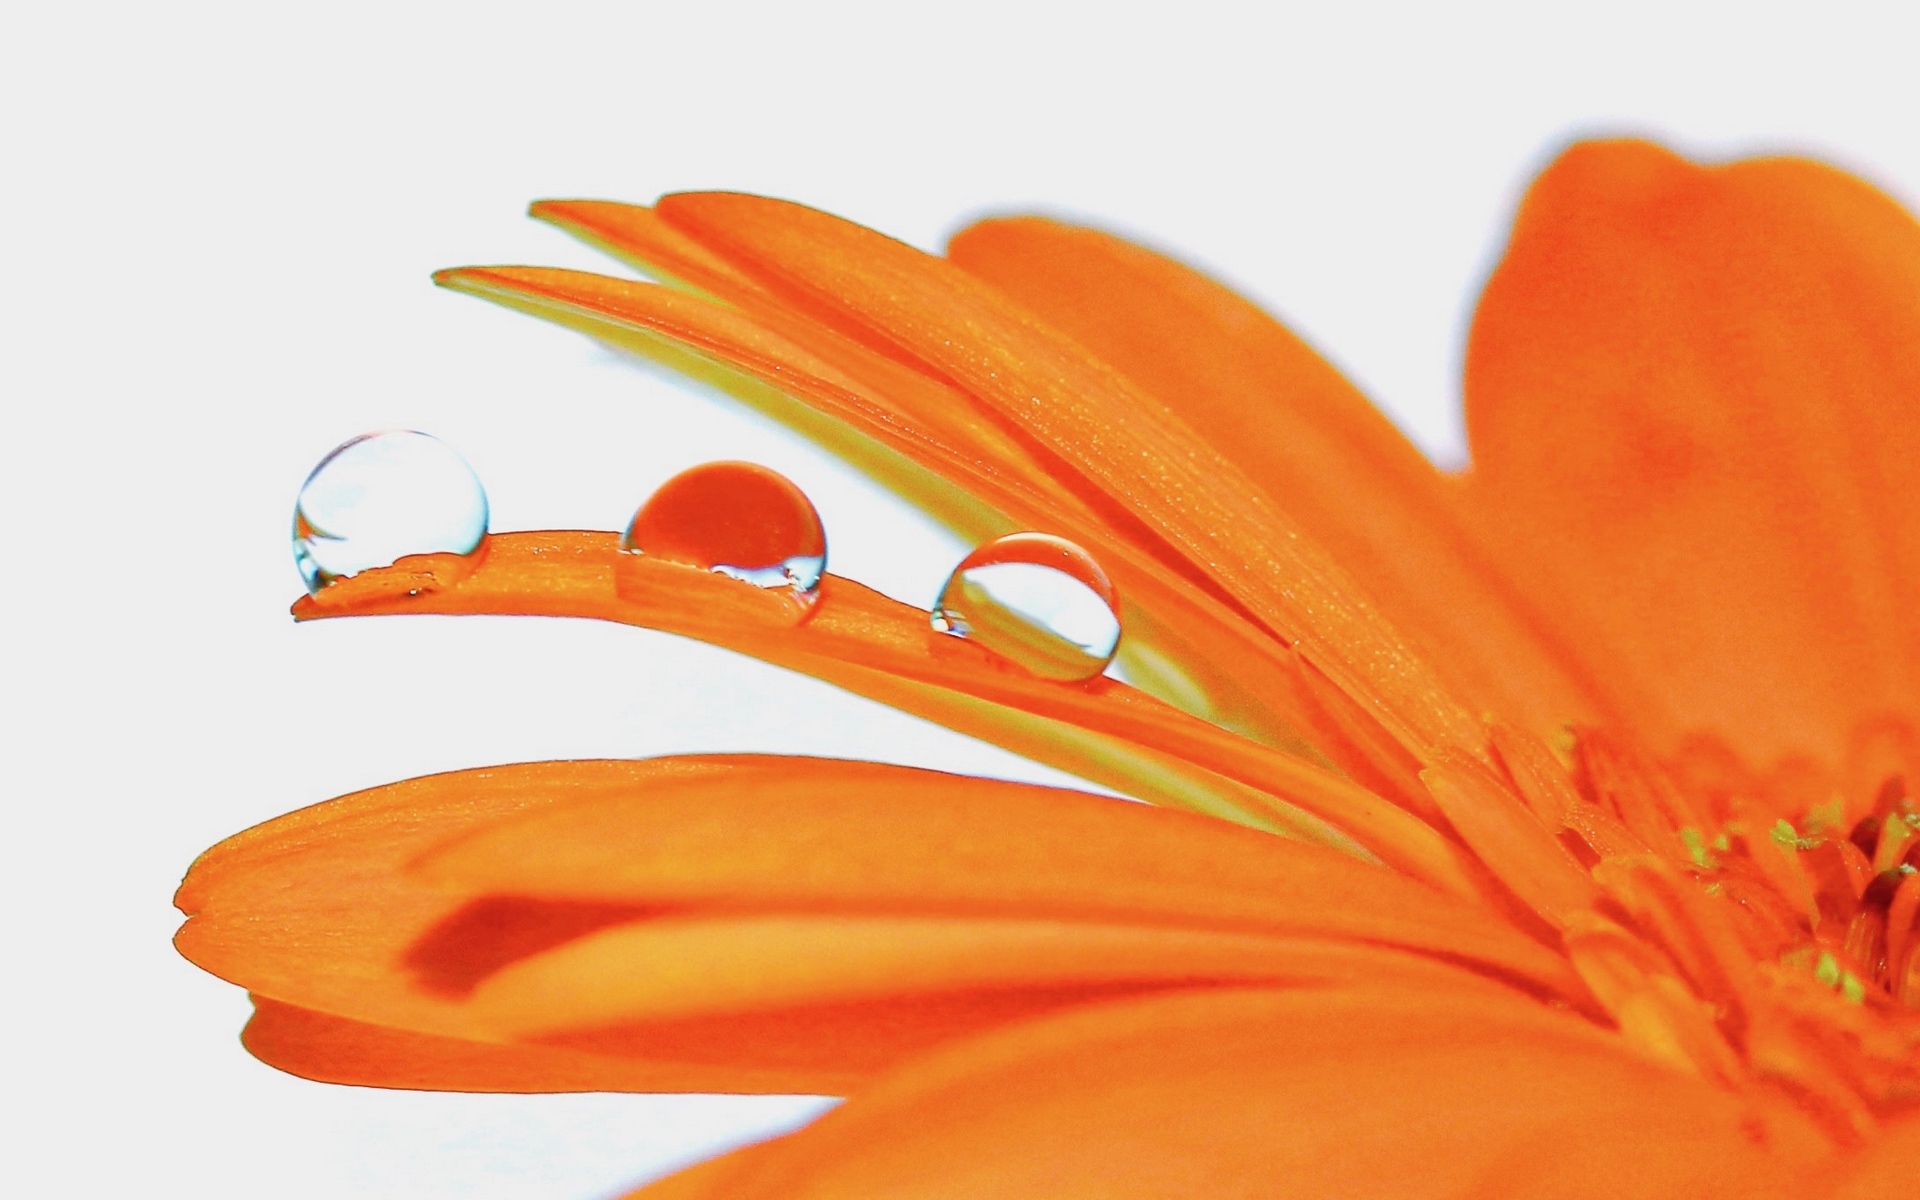 نگاره ای جذاب از گل نارنجی و شبنم باران روی گلبرگ های آن